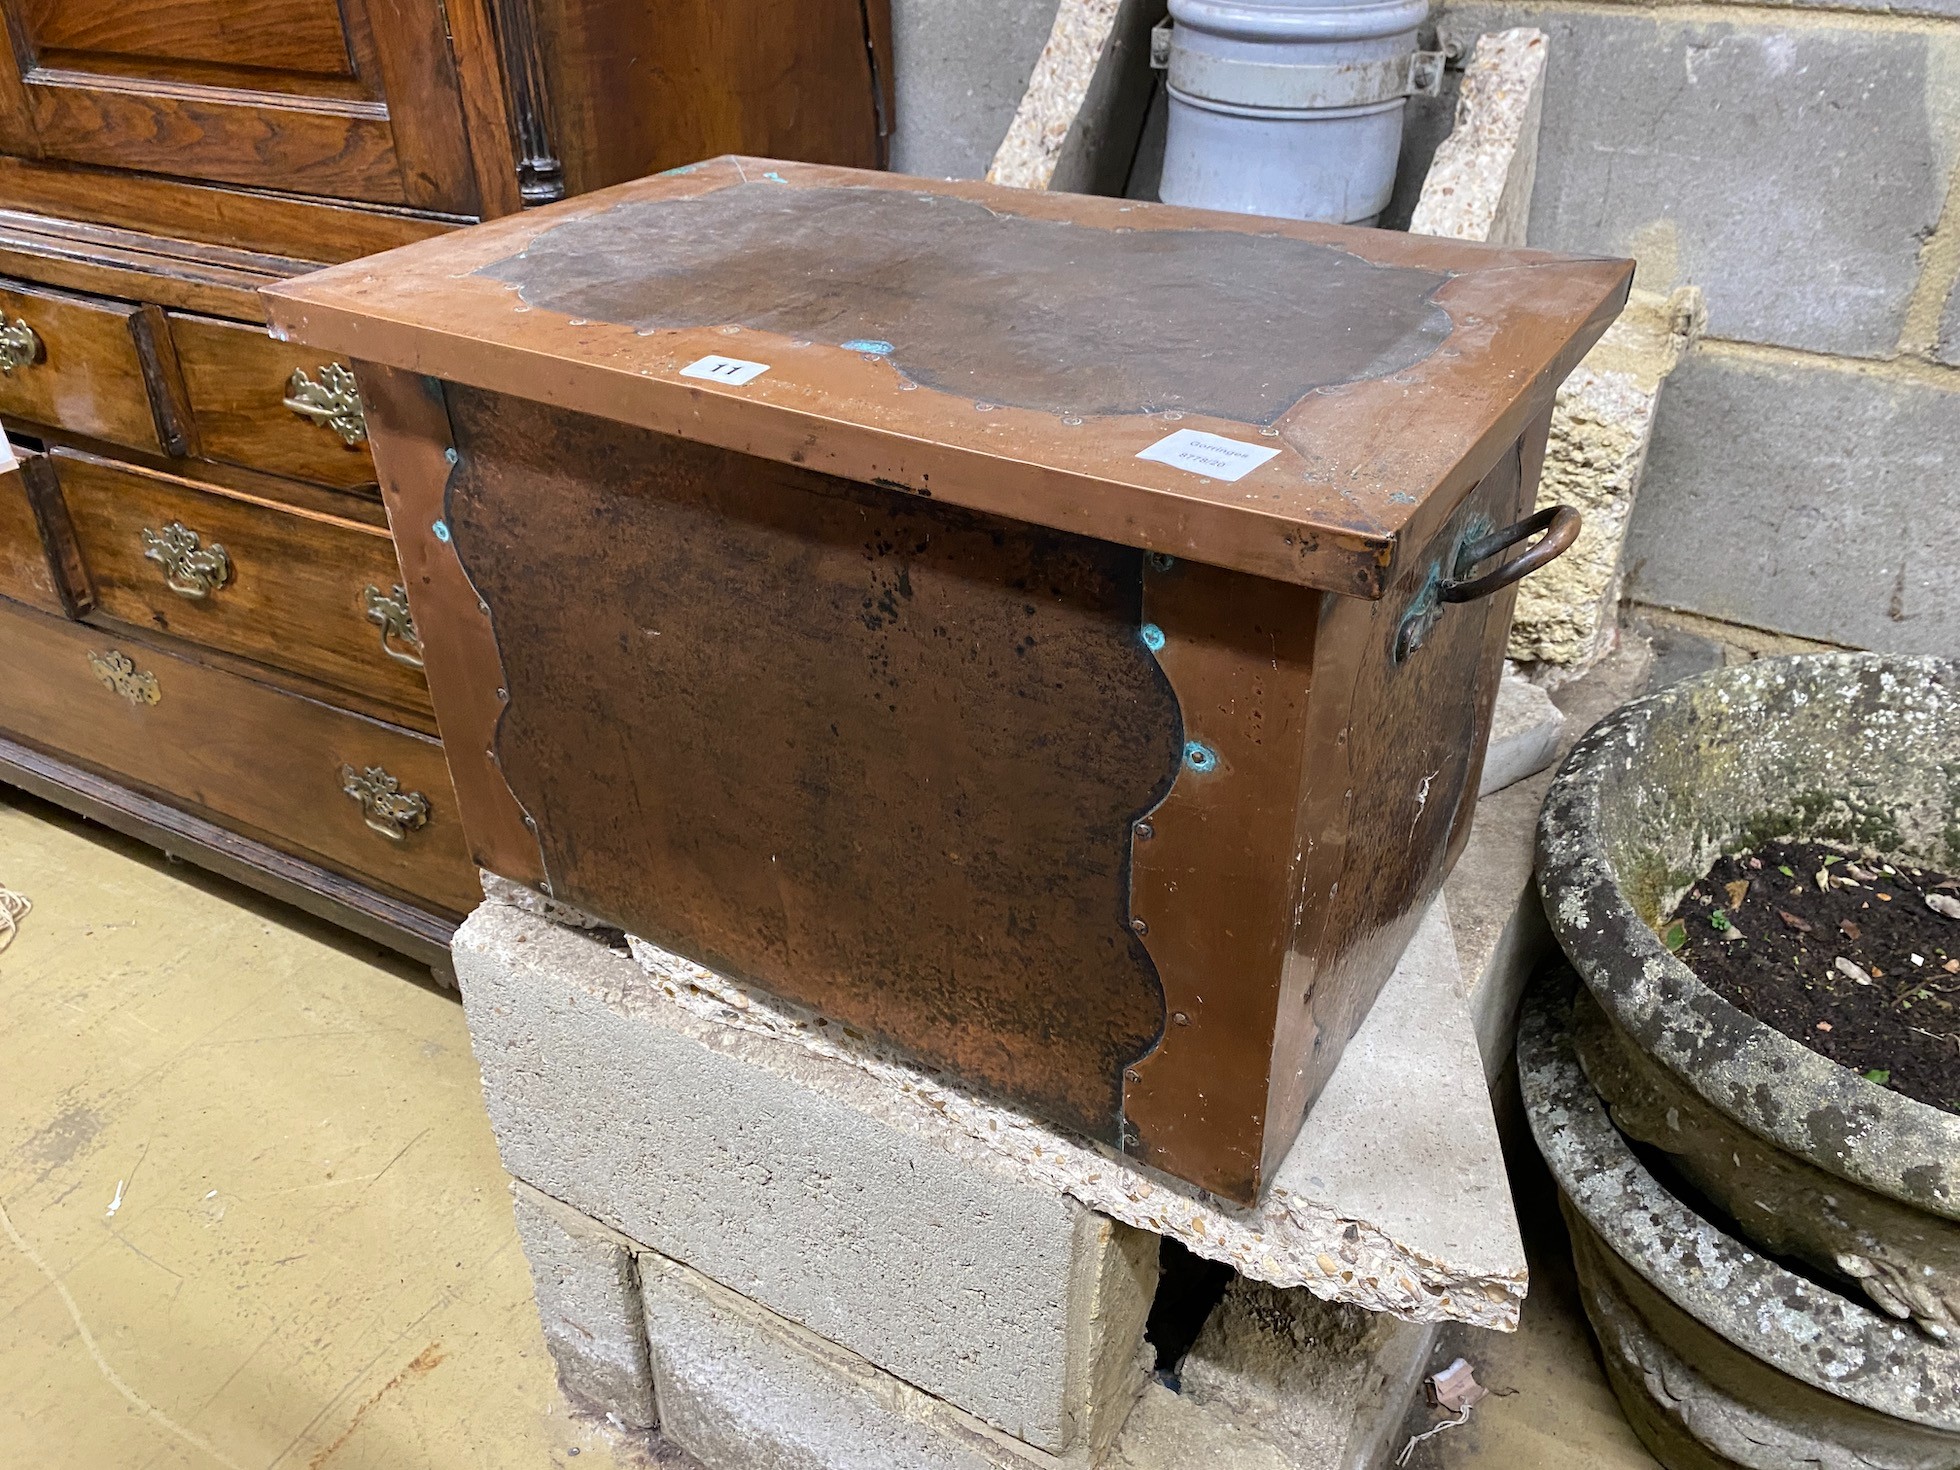 An Edwardian rectangular copper log bin, width 56cm, depth 36cm, height 36cm